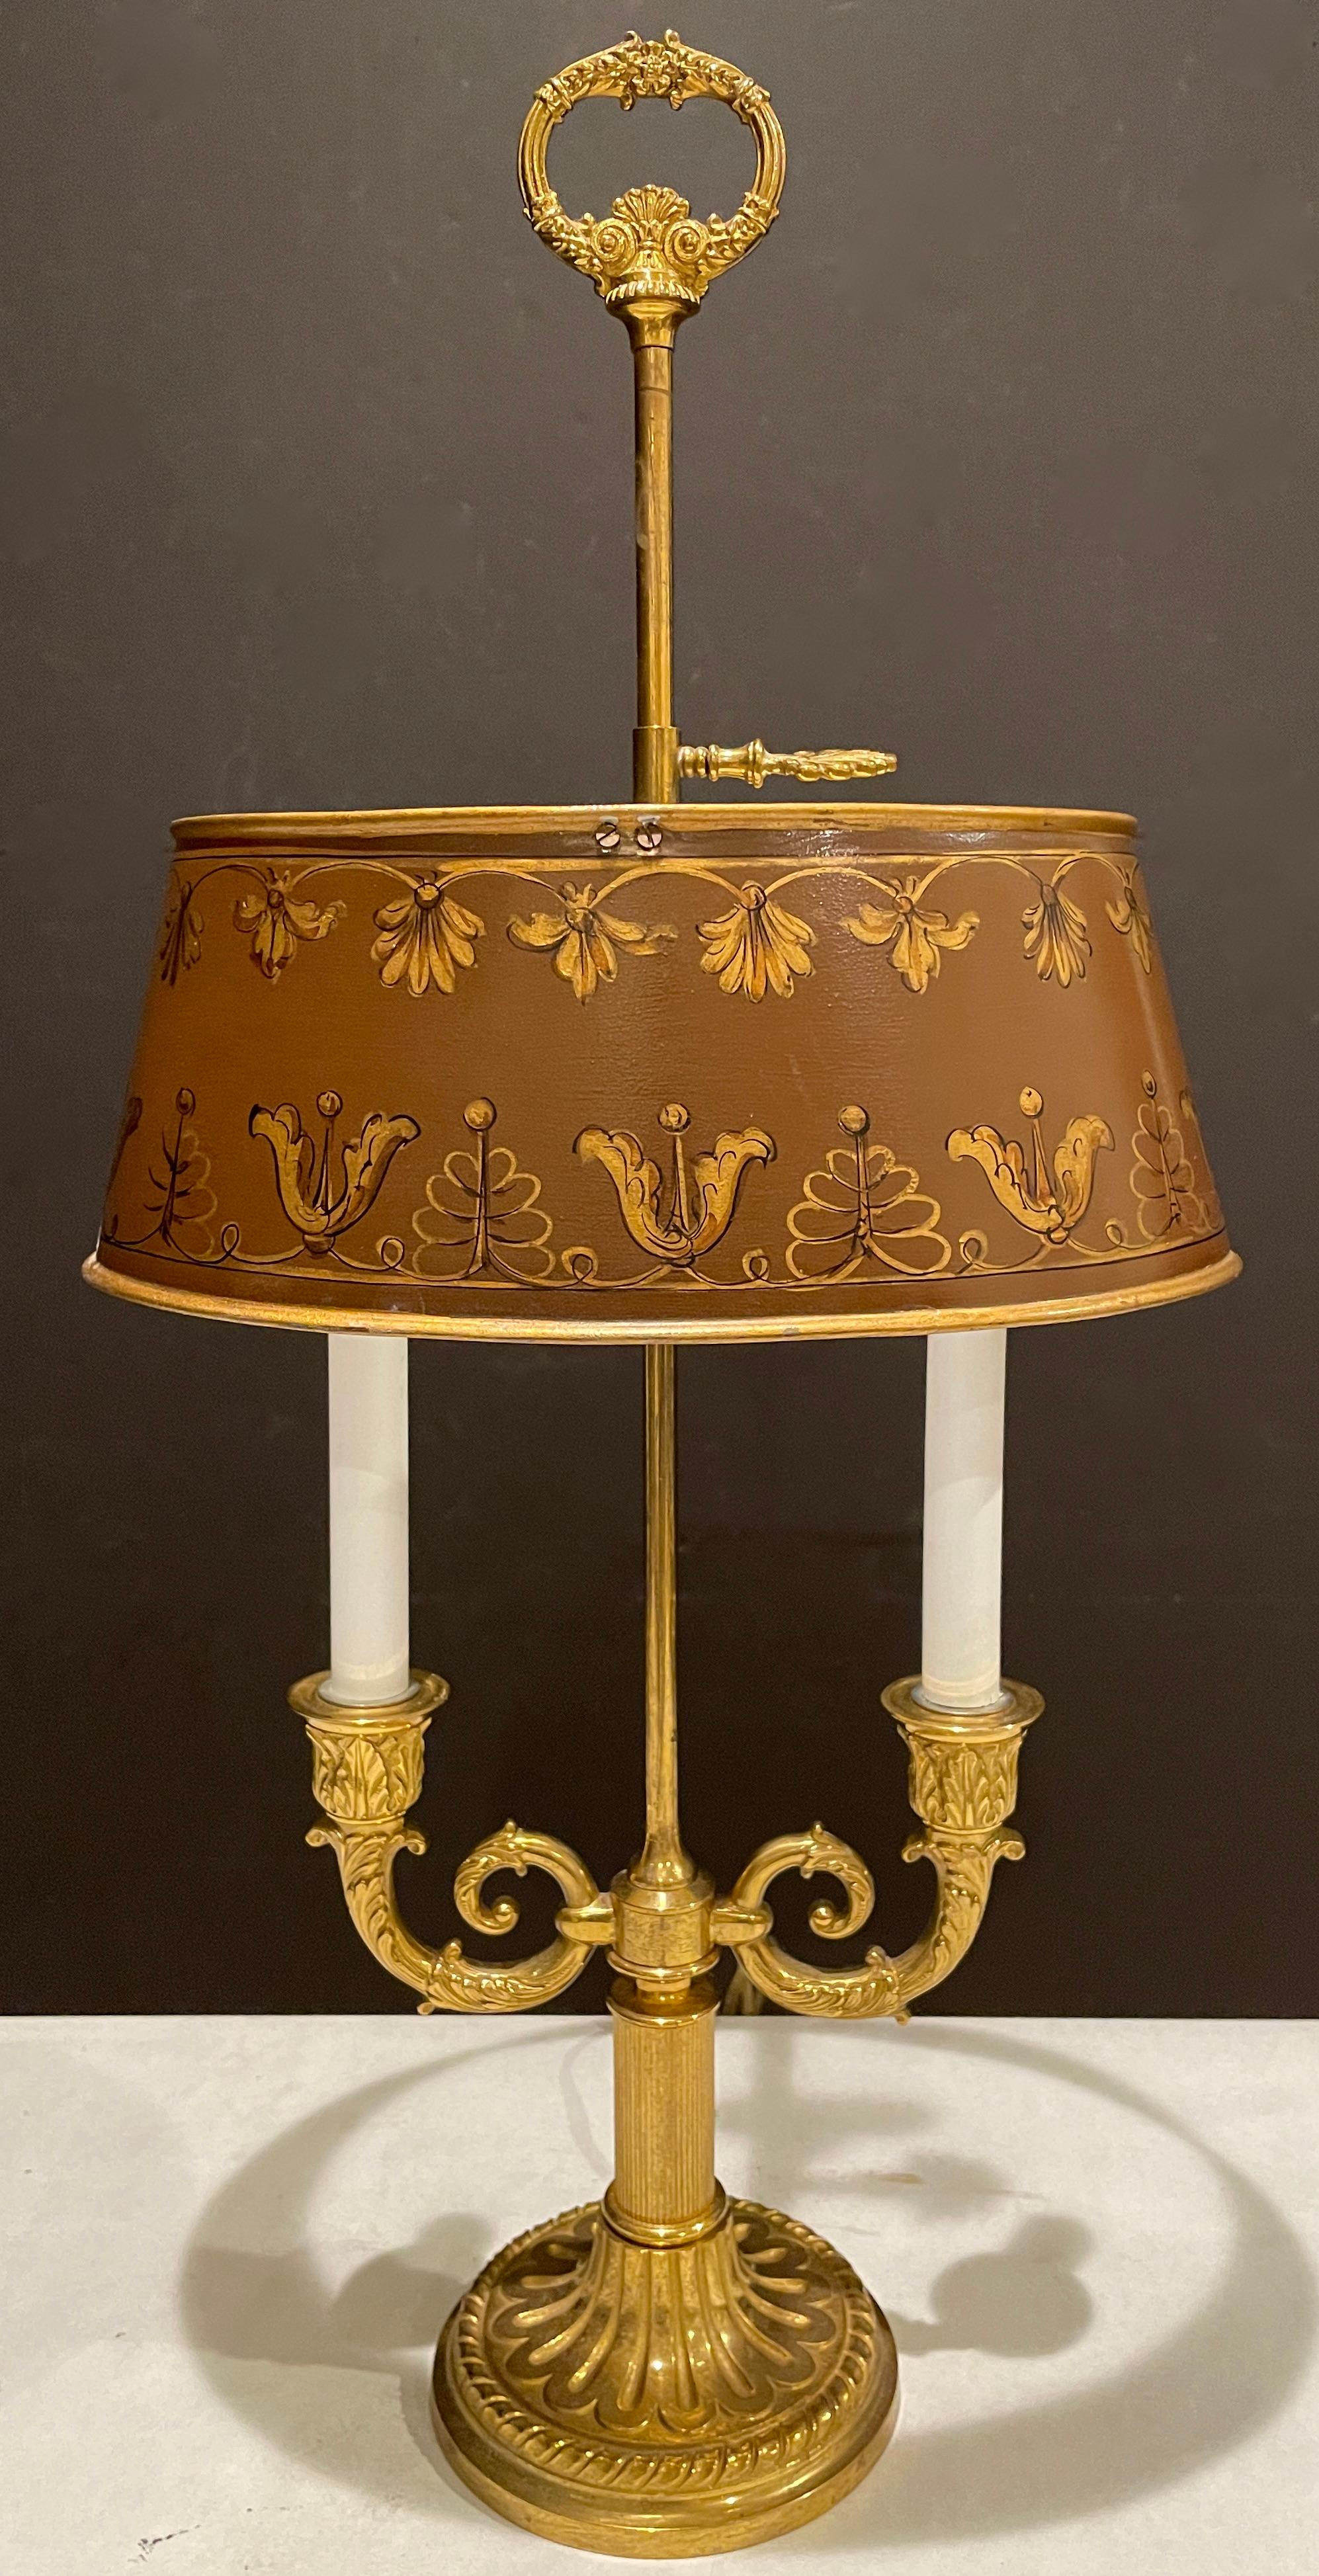 Vieille lampe bouillotte à 2 lumières en bronze doré et tole. Base ronde en bronze et abat-jour ovale réglable en tole dorée et peinte, avec deux bras de bougies et un embout en forme de couronne.